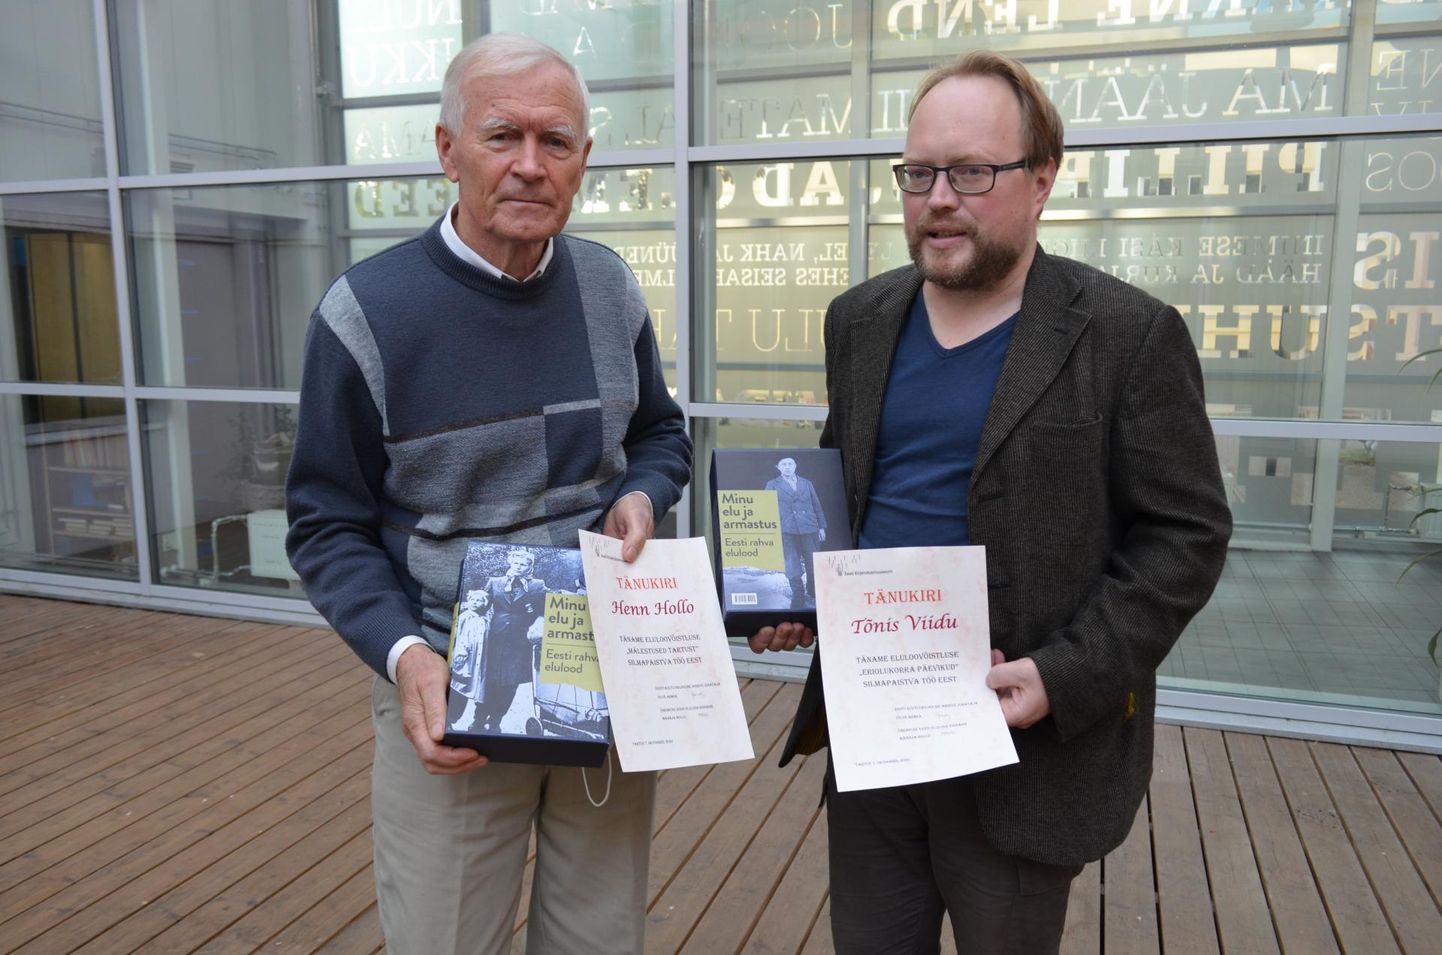 Henn Hollo (vasakul) teenis kirjandusmuuseumi auhinna oma tudengiaegse Tartu elu mitmetahulise kirjeldamise eest ja Tõnis Viidu eriolukorra päeviku eest.